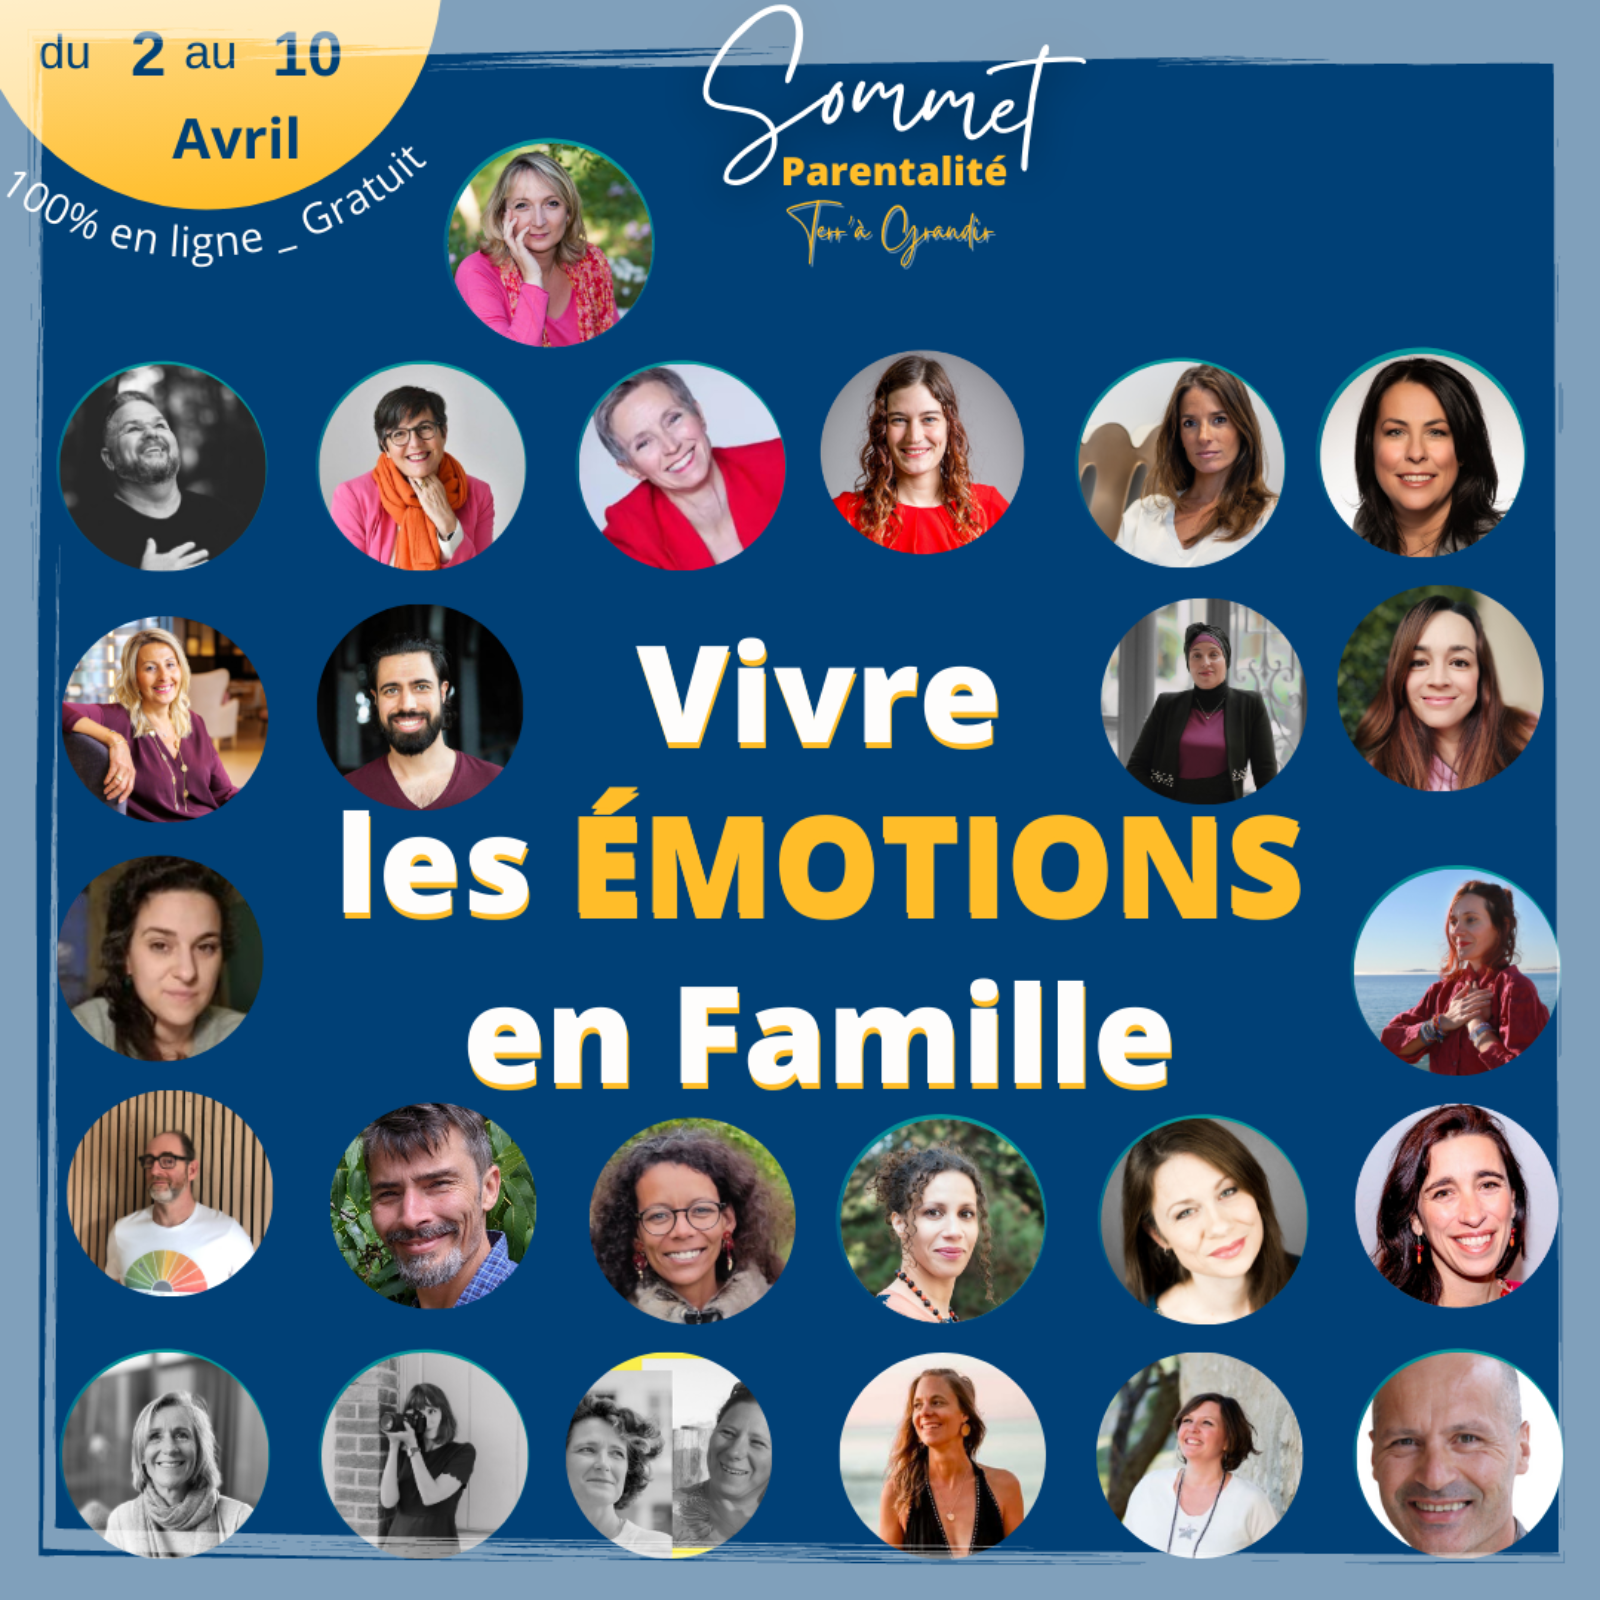 MMM au Sommet “Vivre les émotions en famille”